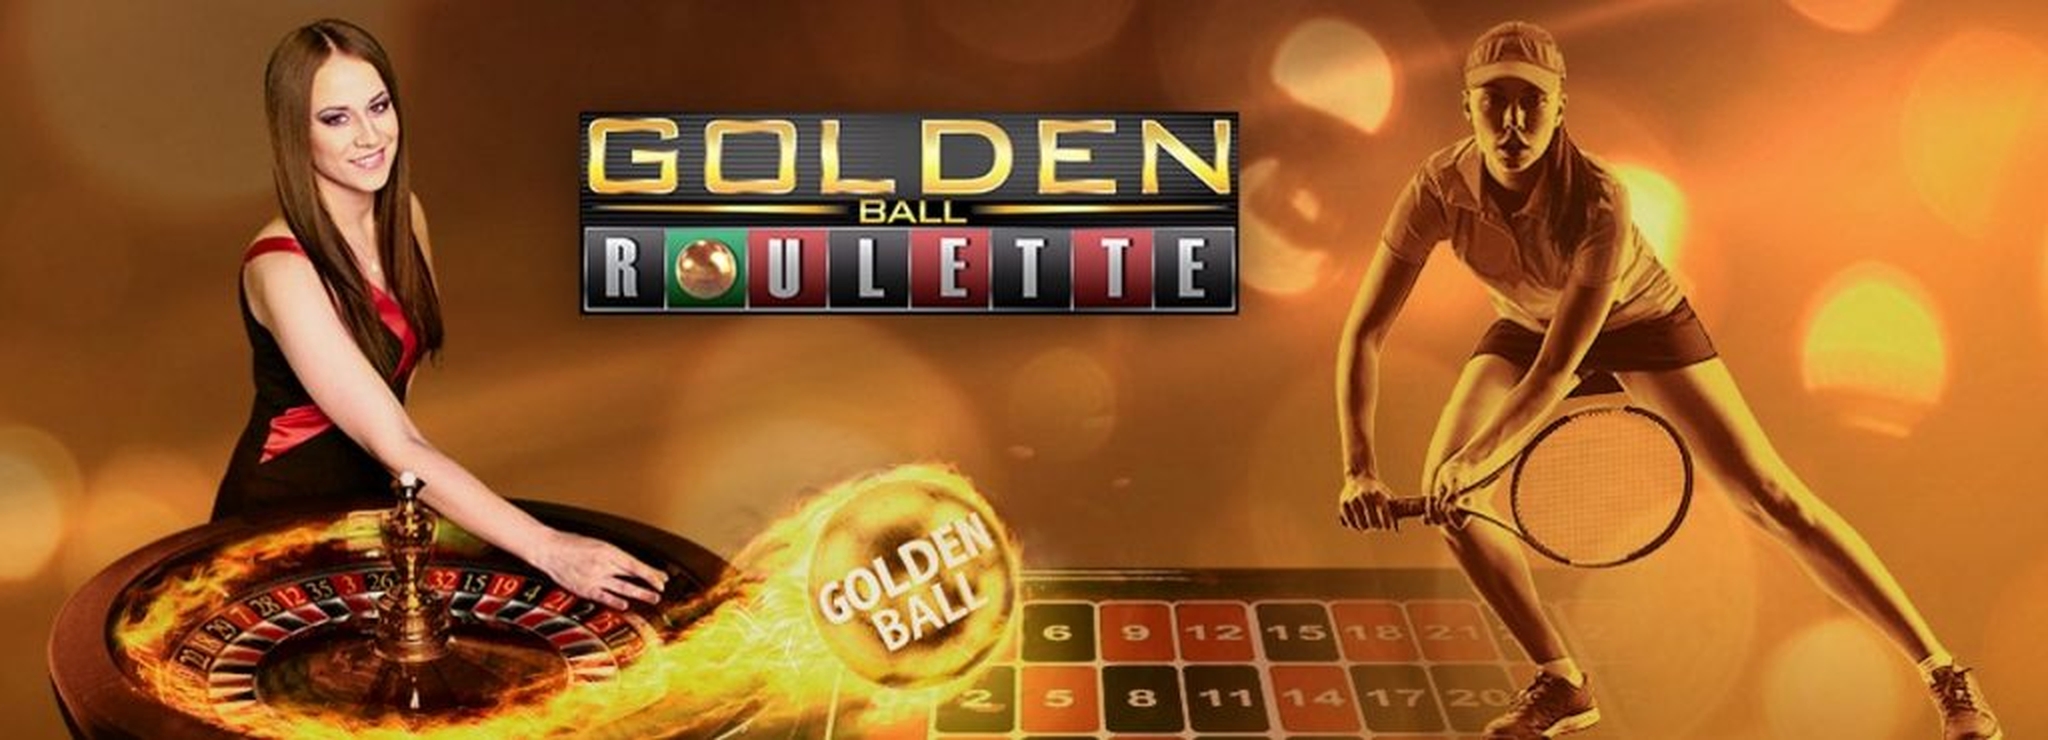 Roulette Golden Ball Live casino demo